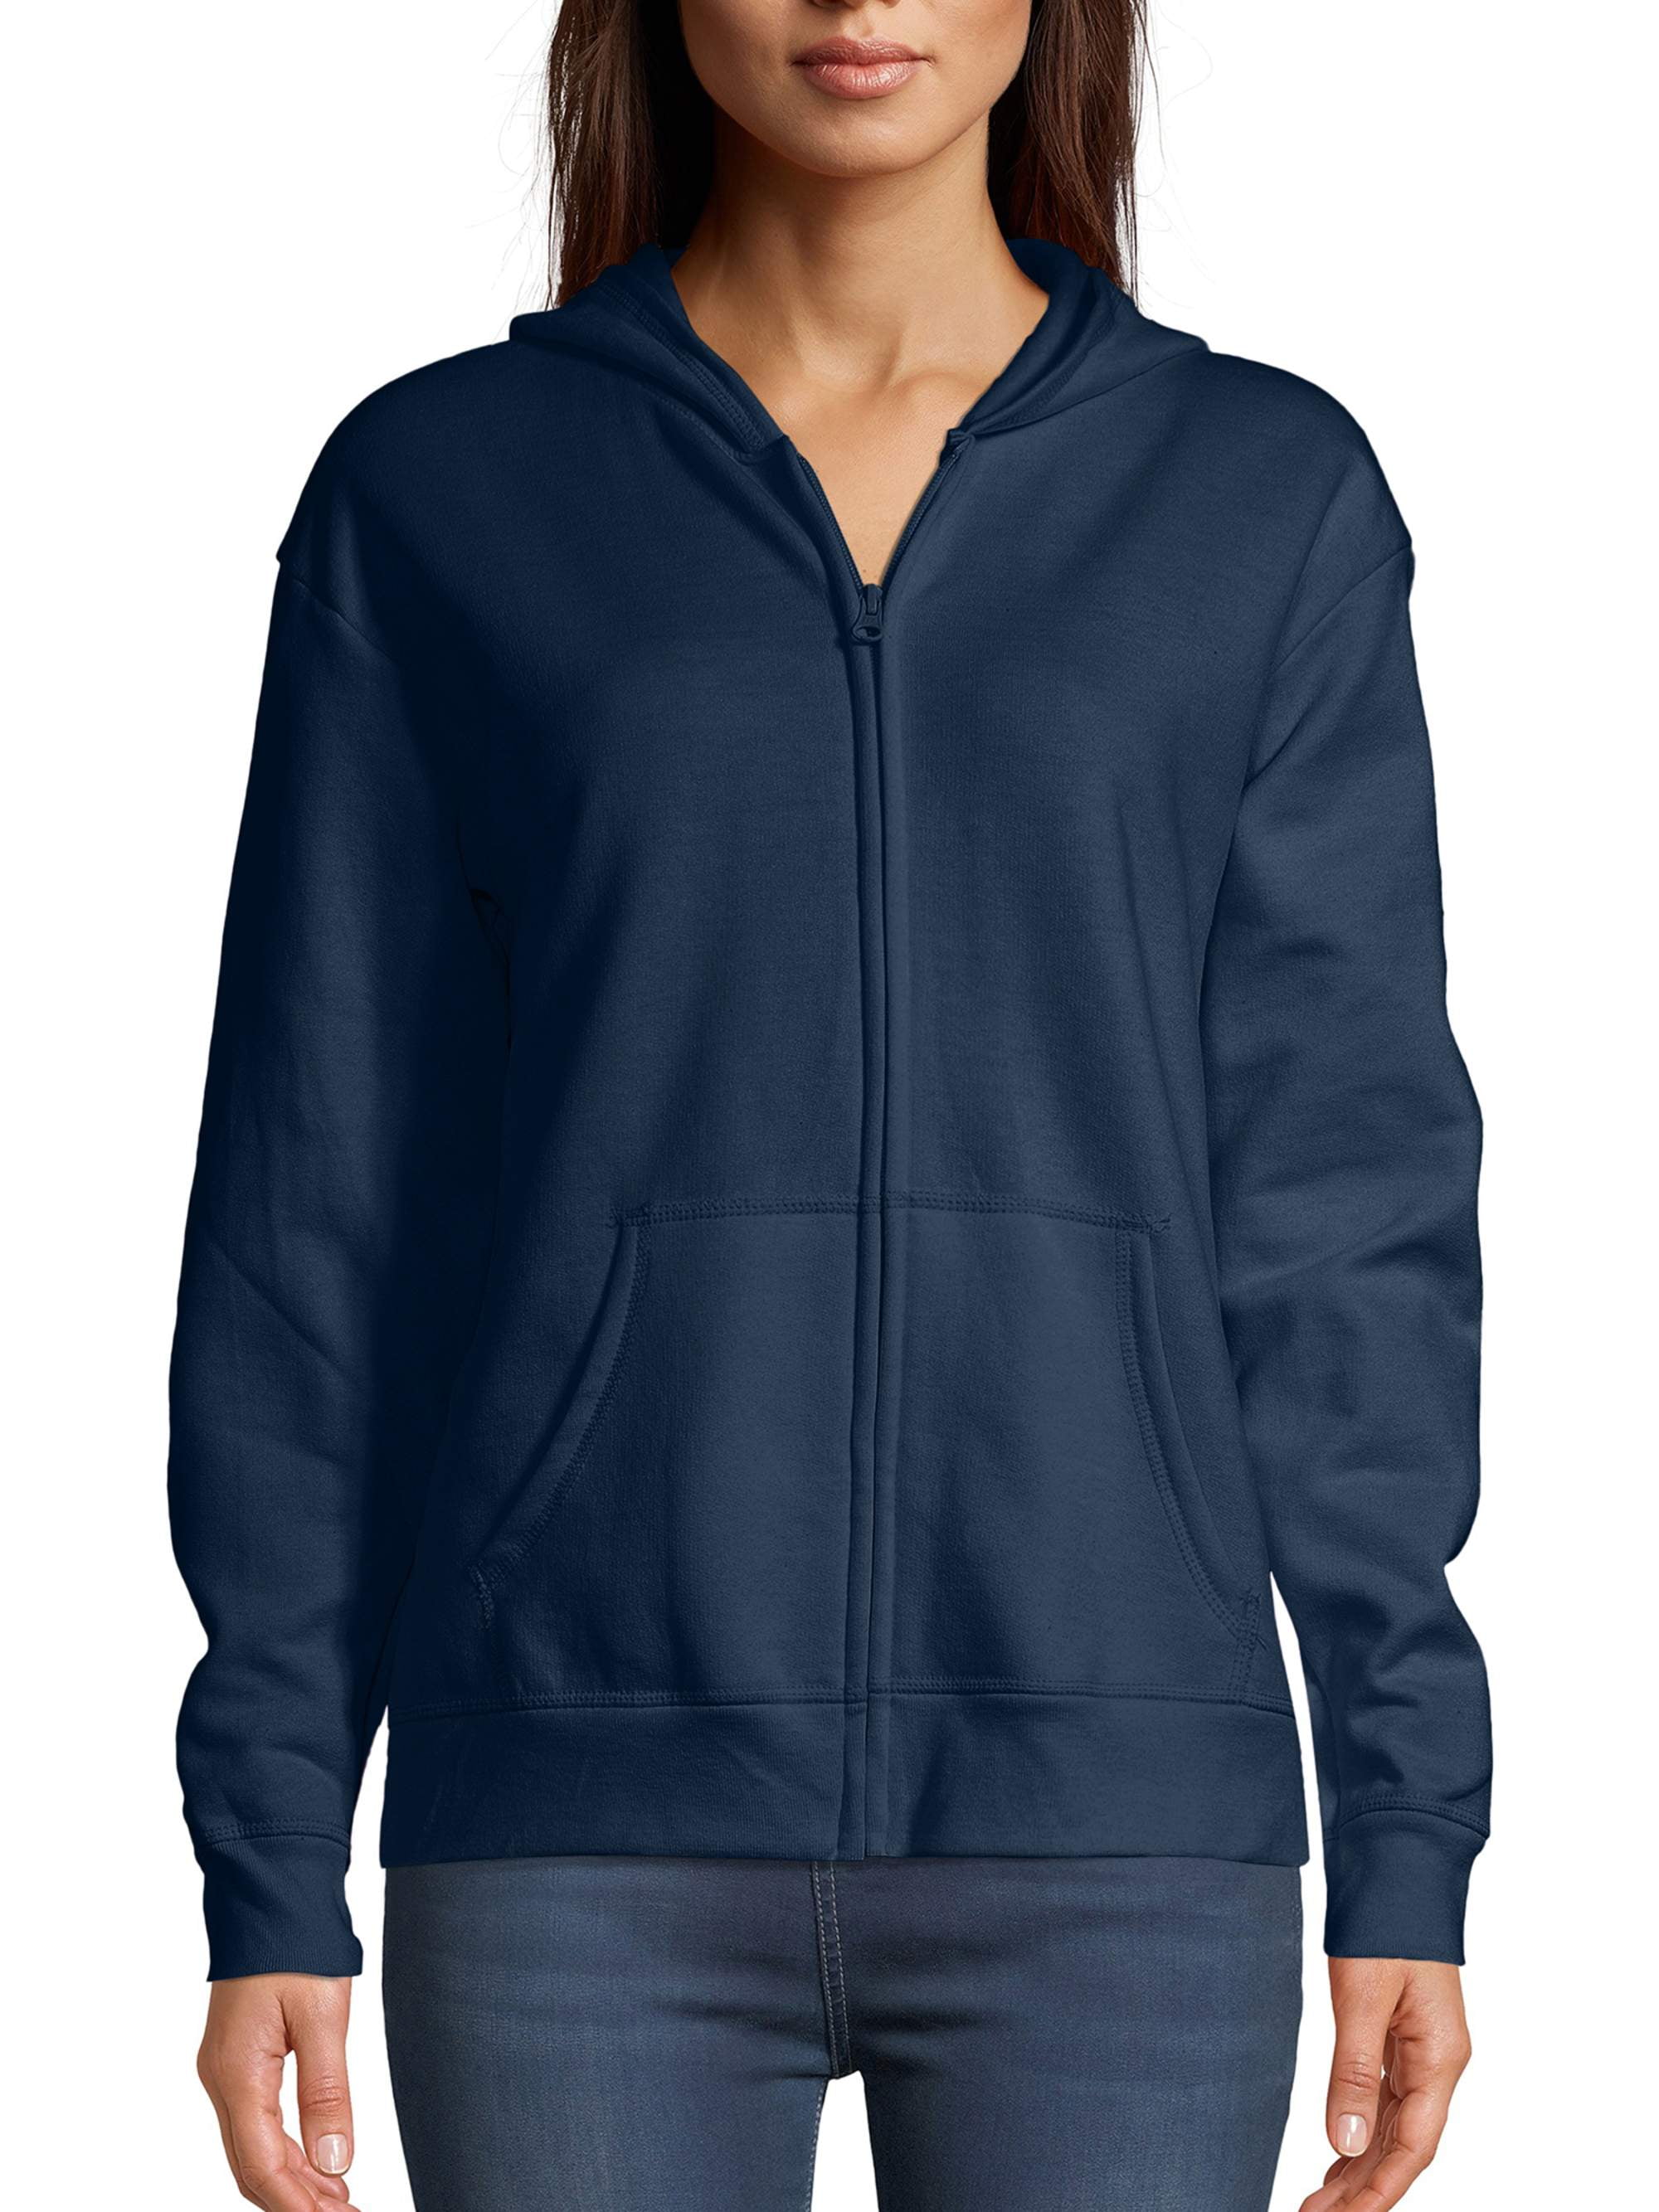 Ladies Plain Zip Up Hoodie Sweatshirt Women's Fleece Jacket Hooded Top S to 5XL 